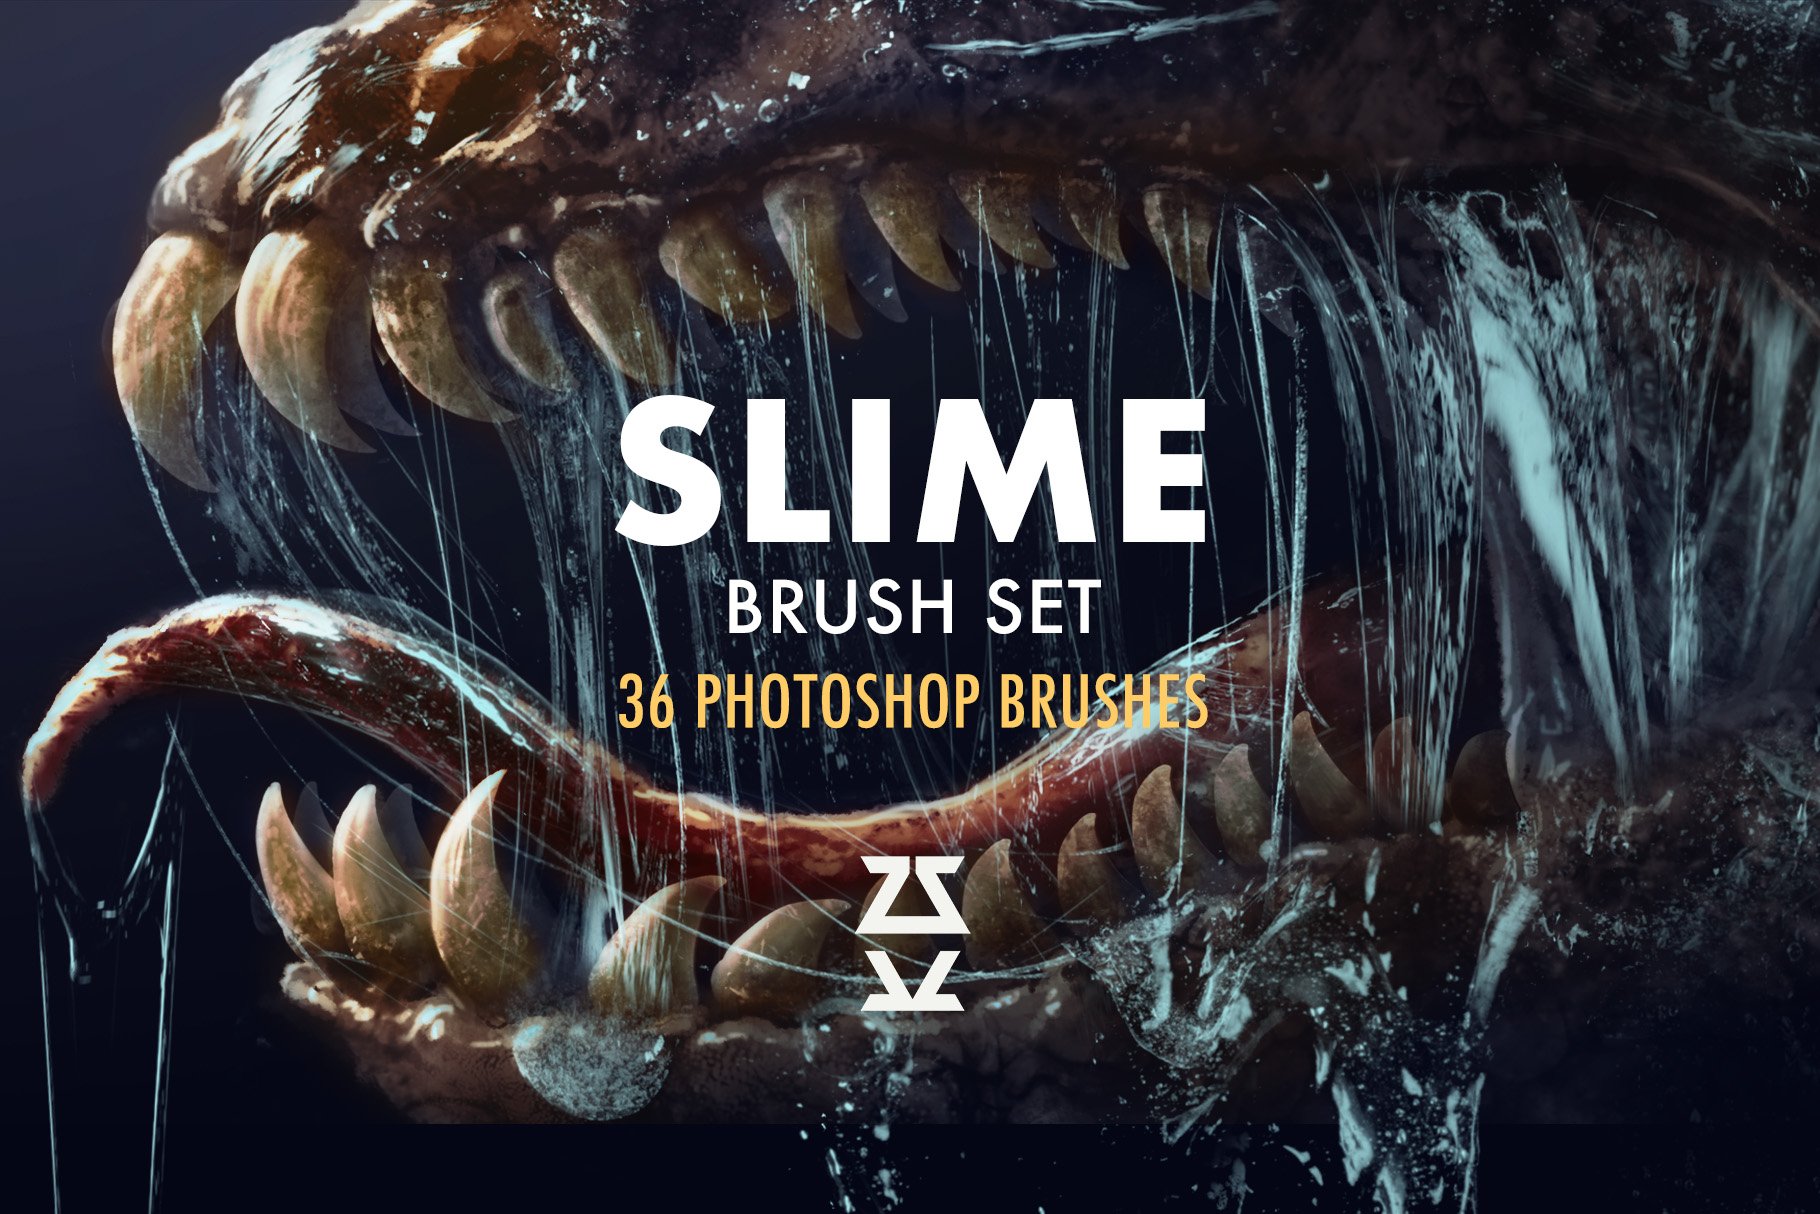 Slime brush setcover image.